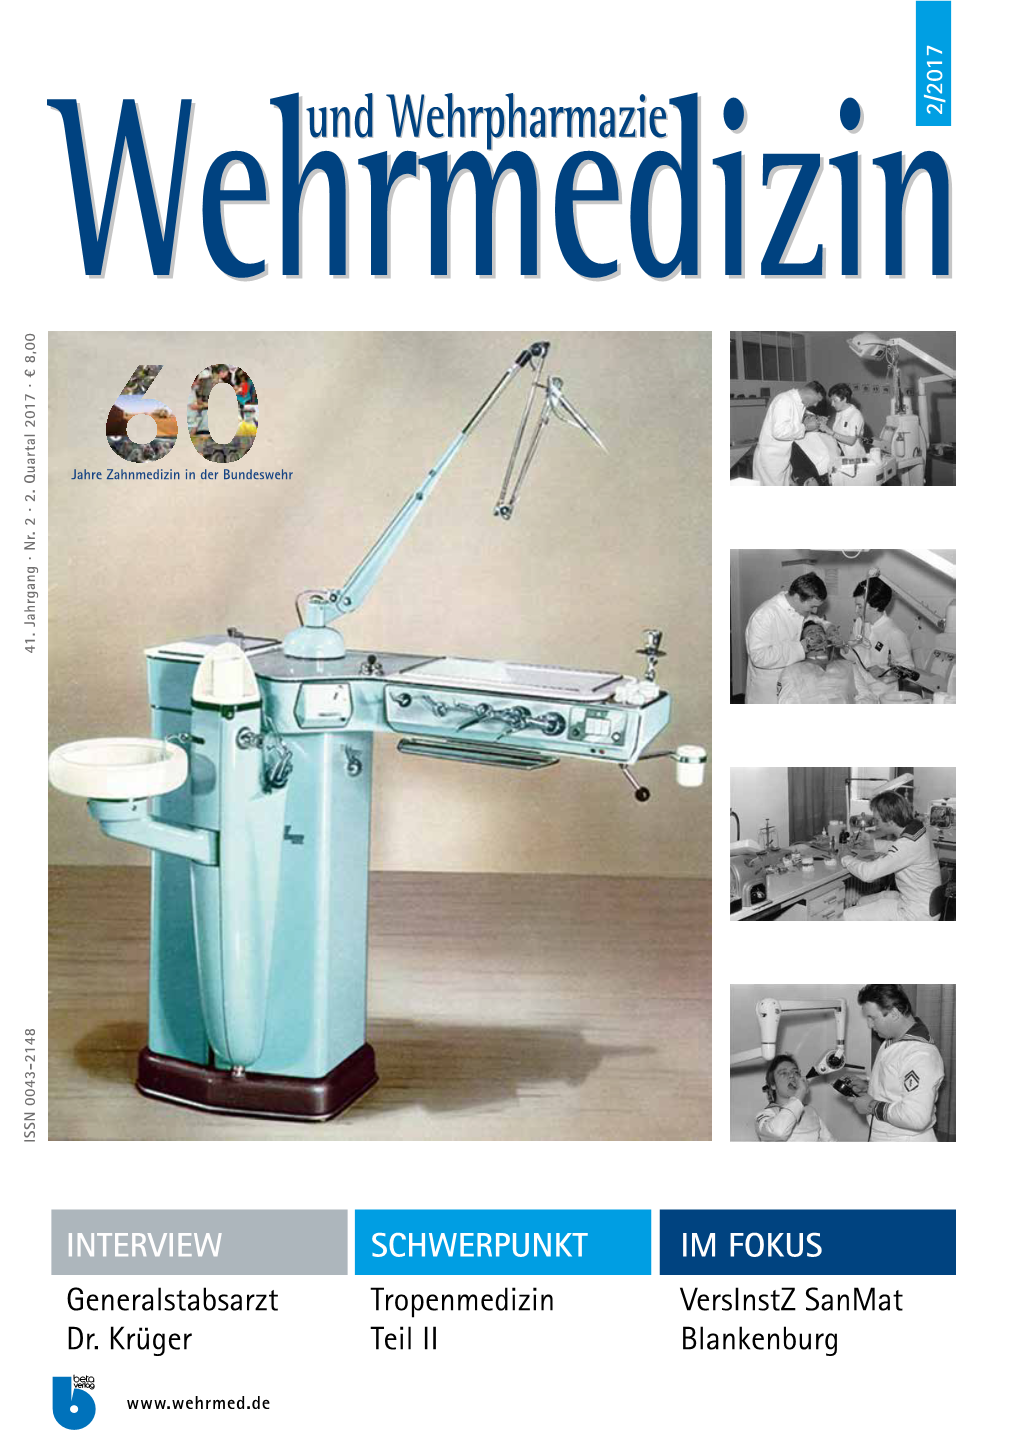 Wehrmedizin Und Wehrpharmazie 2/2017 1 C F Vite Er C Welt- Cervitec ® F Neuheit